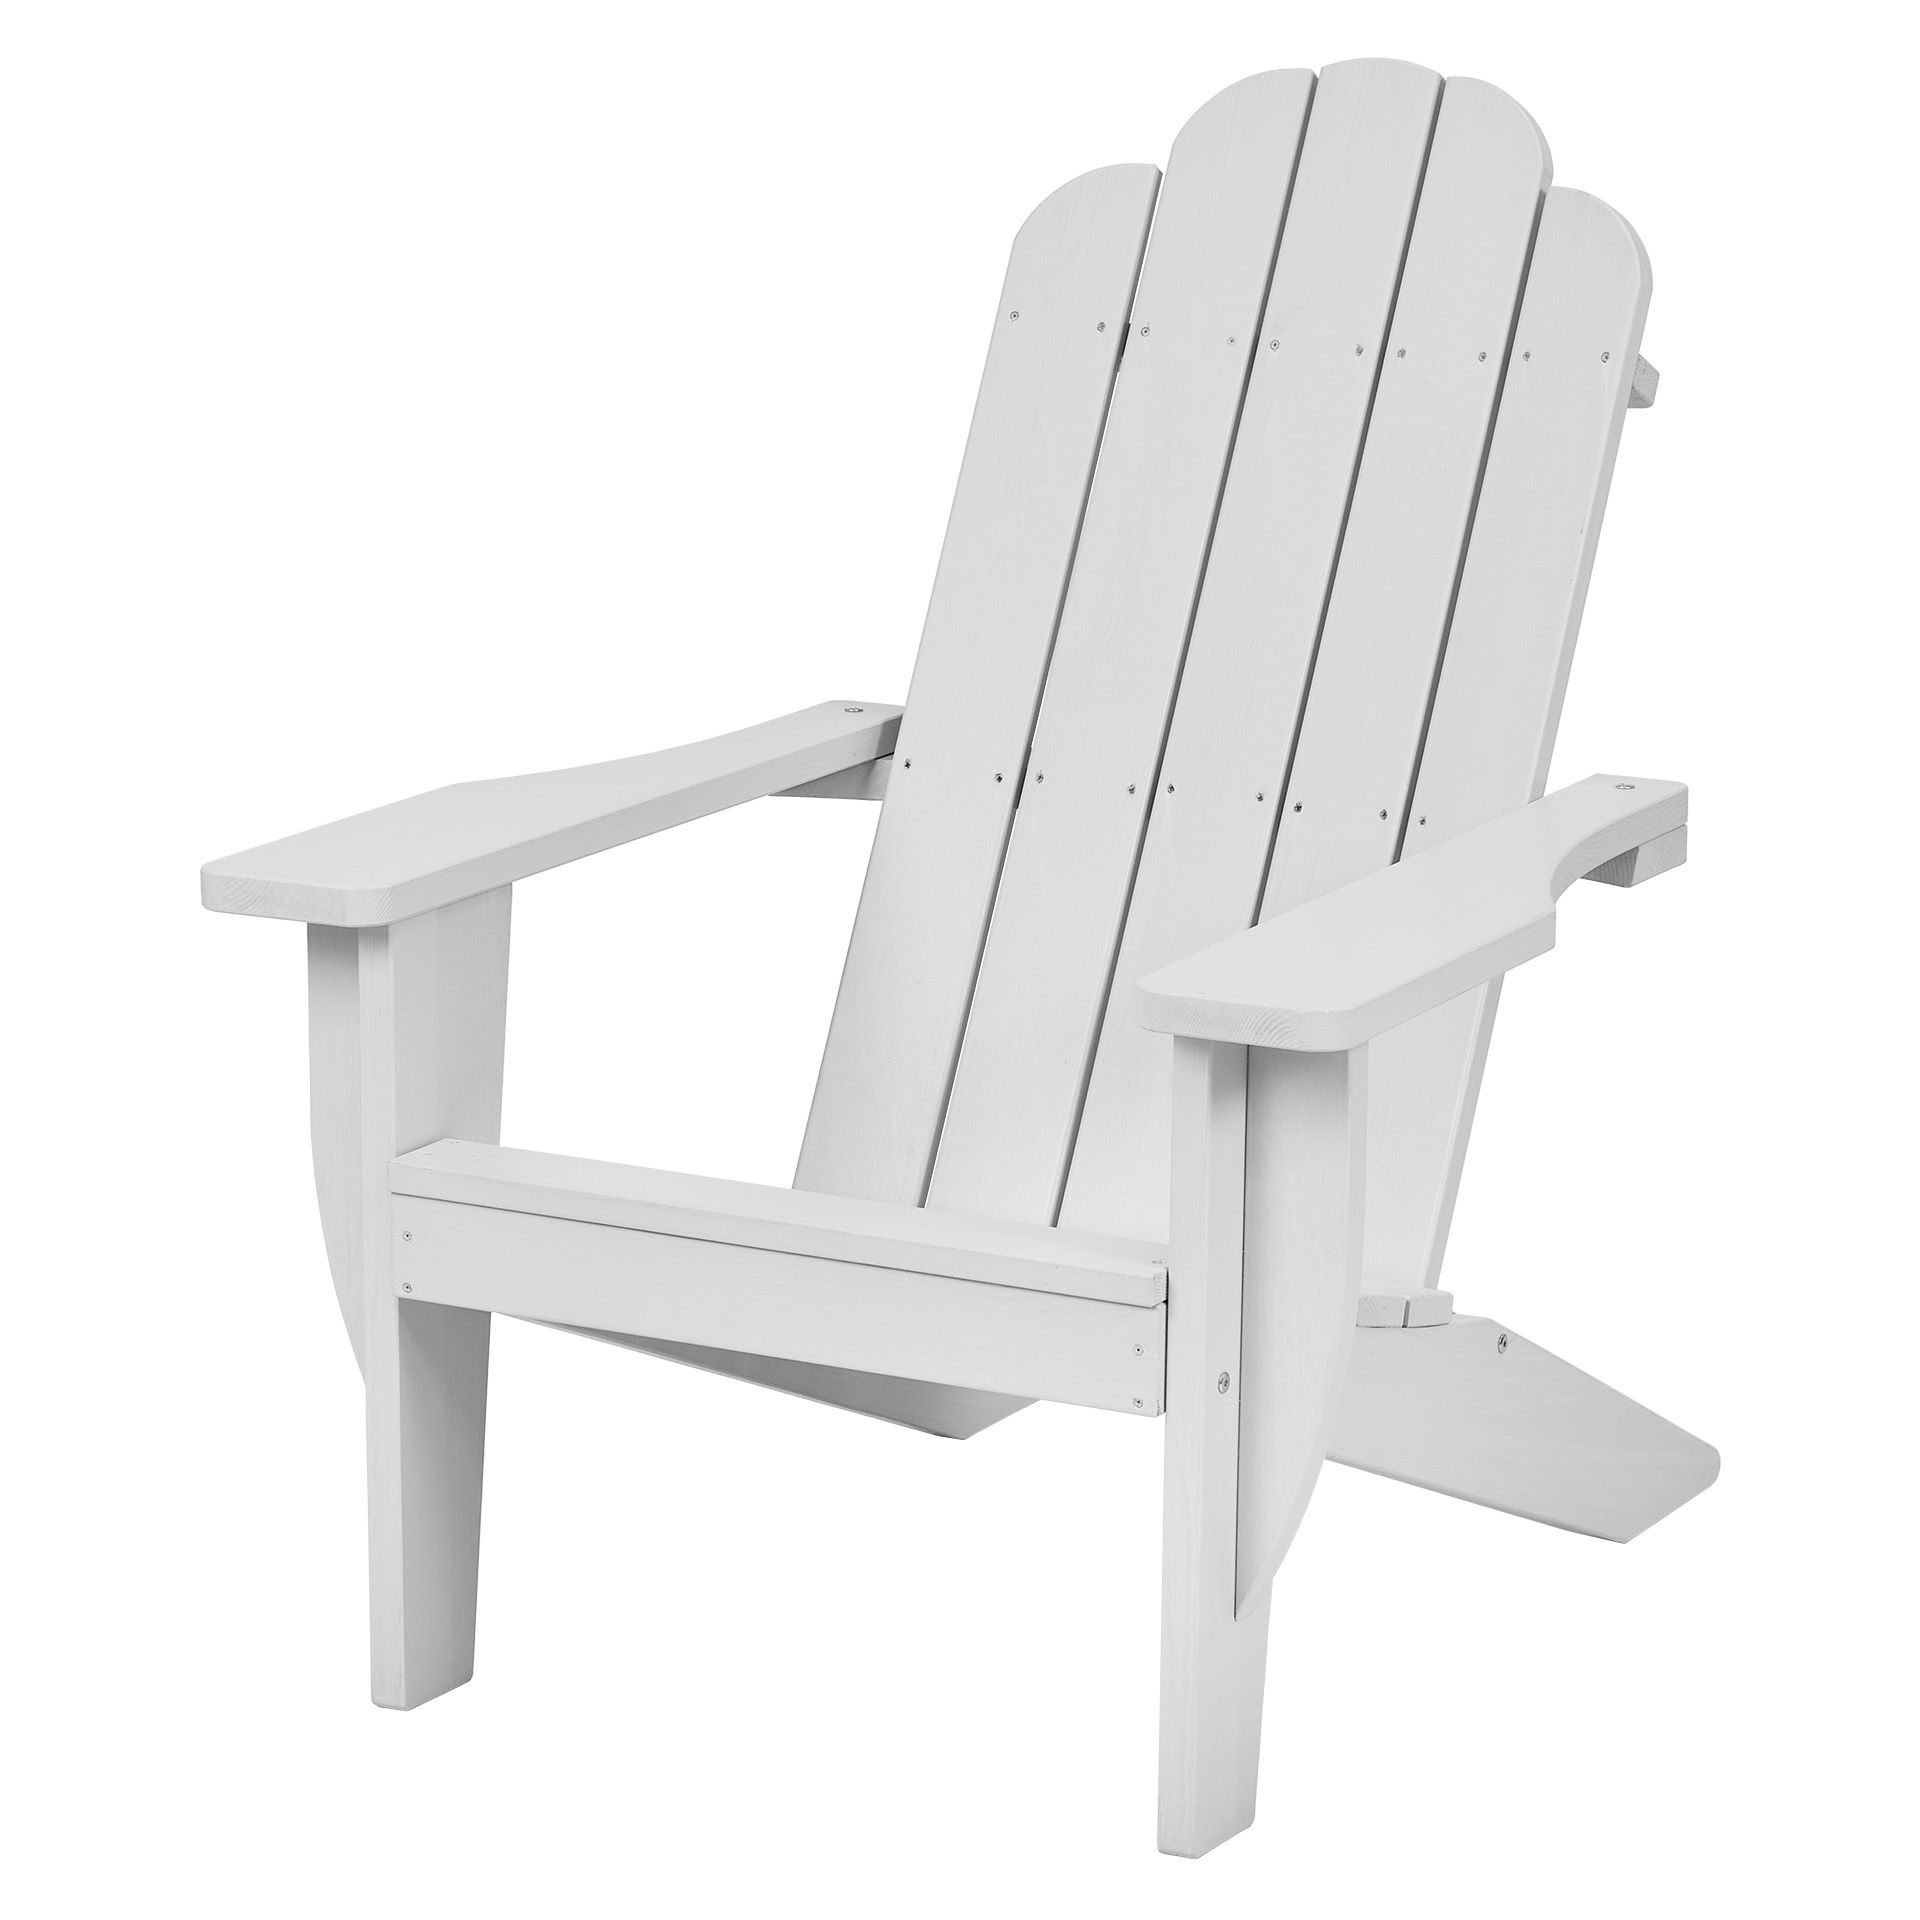 Садовое кресло Interlink Ройял 700415 80х100х100см светло-серый, серый